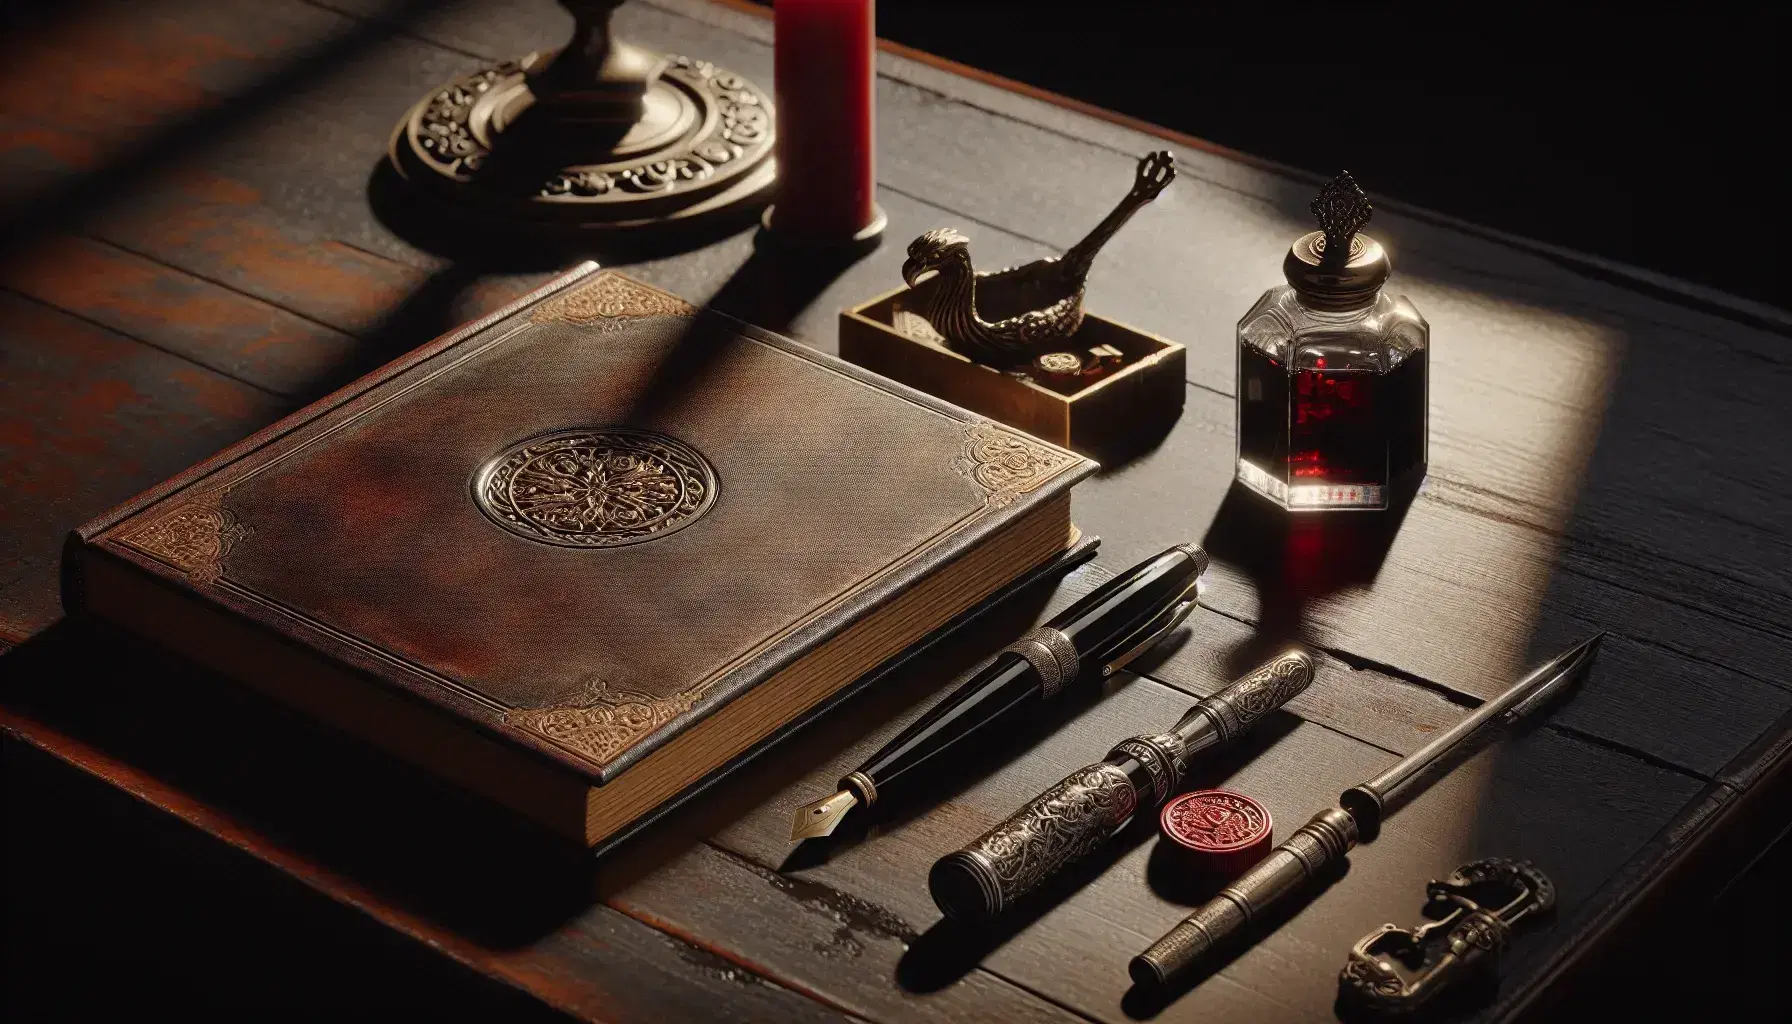 Escritorio de madera oscura con libro antiguo abierto, sello y lacre rojo, pluma estilográfica y tintero, y llaves vintage bajo luz suave.